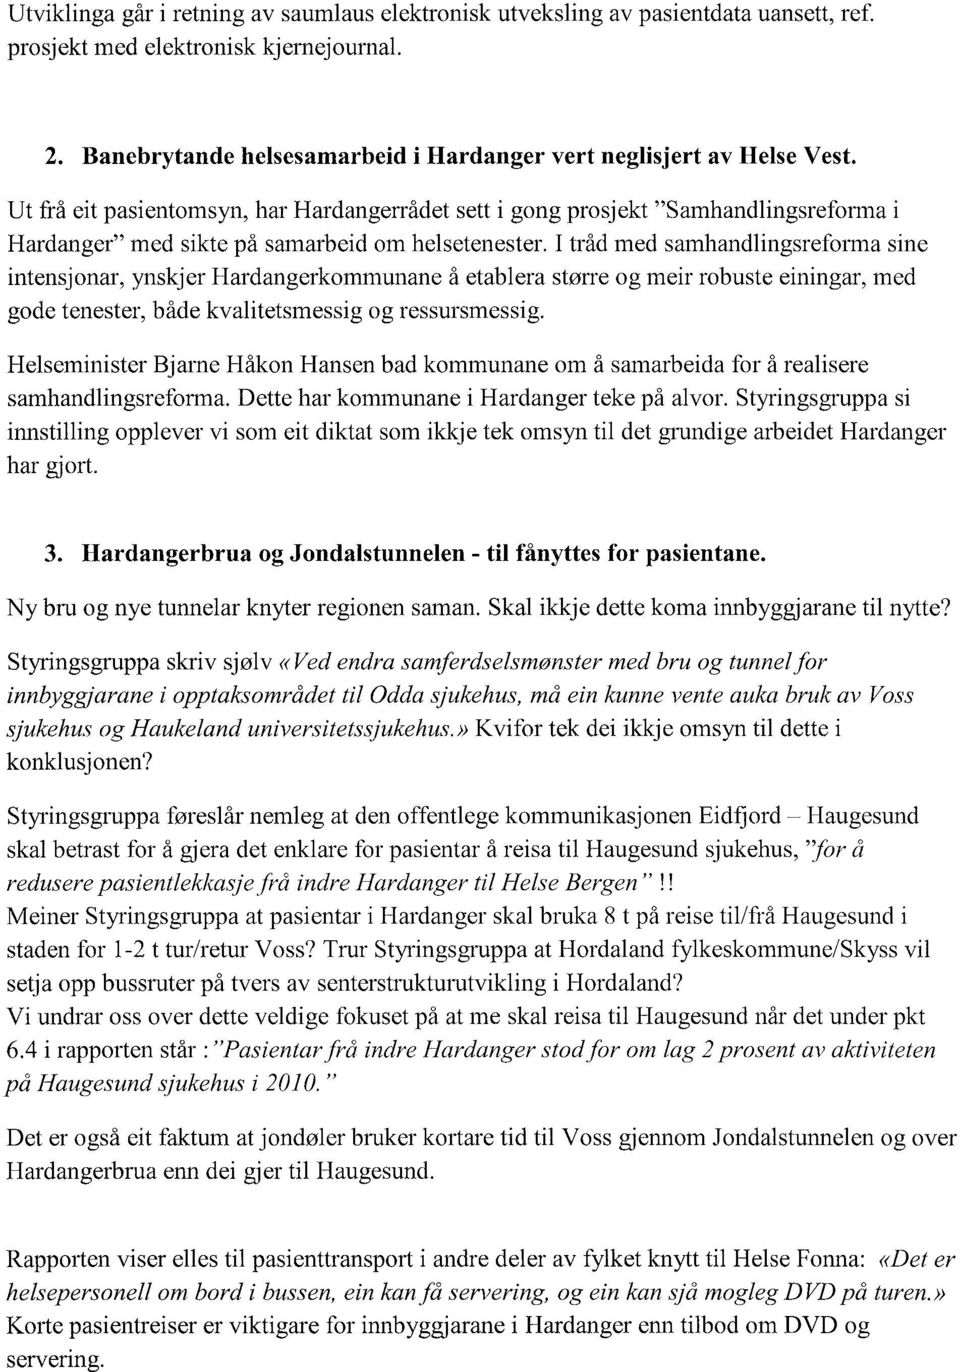 Ut frå eit pasientomsyn, har Hardangerrådet sett i gong prosj ekt "Samhandlingsreforma i Hardanger" med sikte på samarbeid om helsetenester.